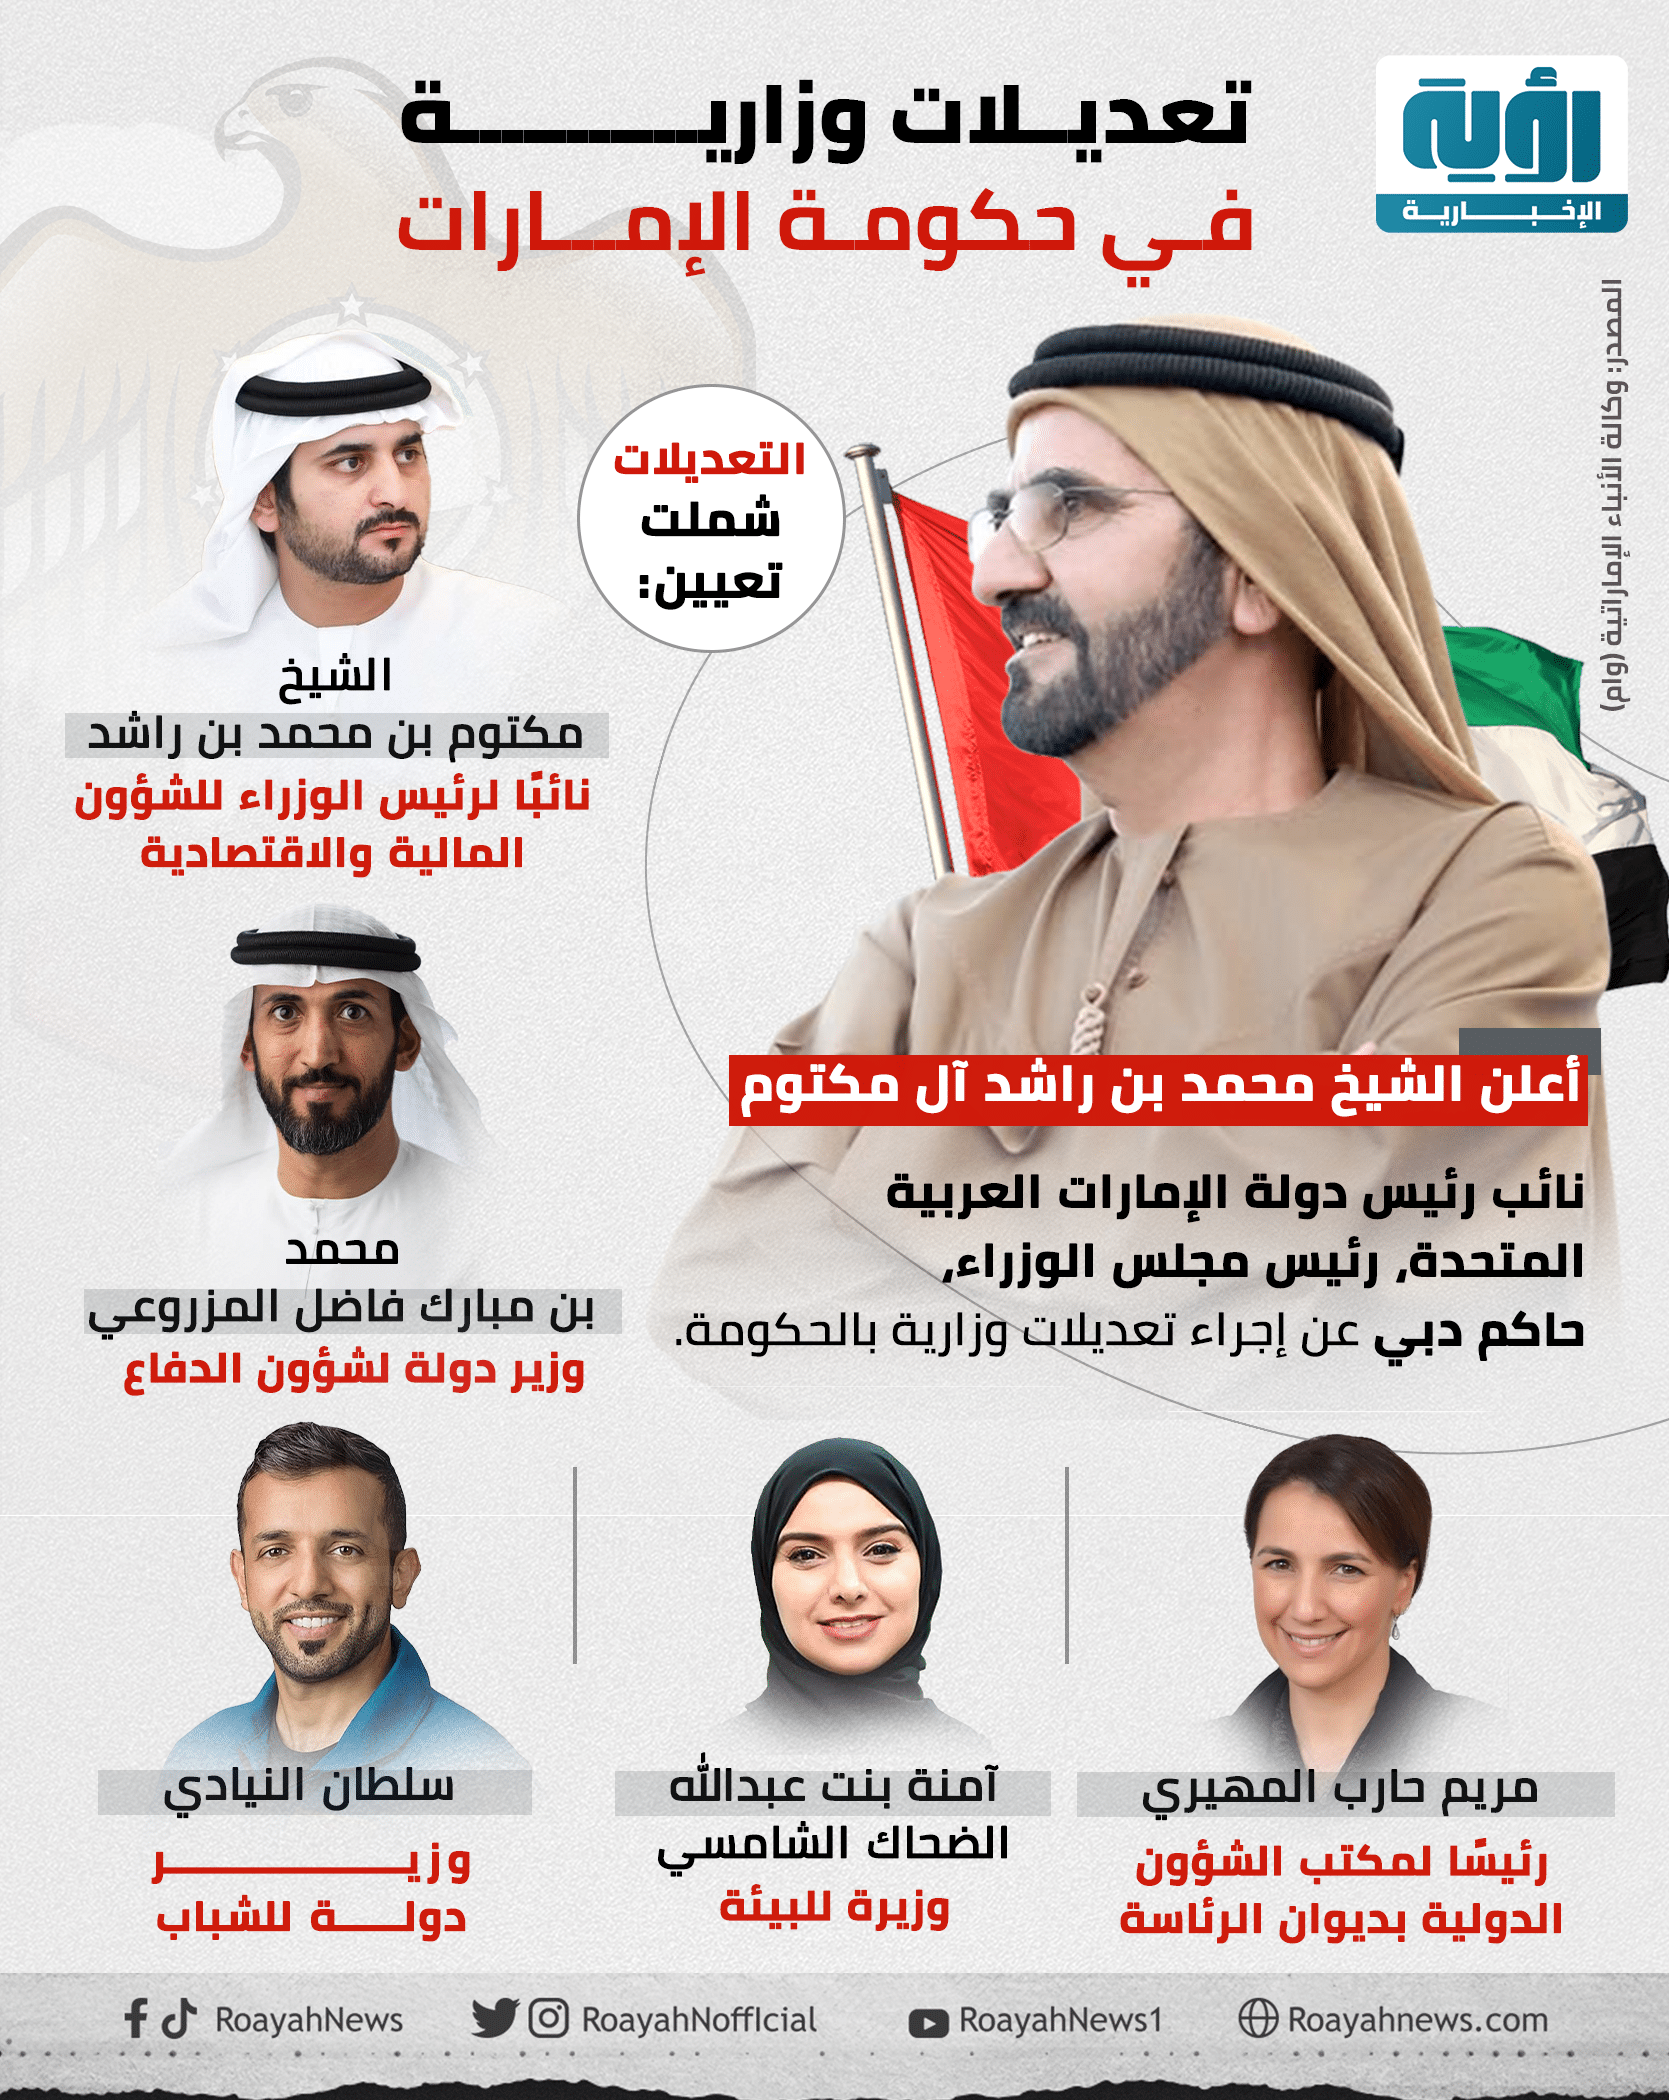 تعديلات وزارية في حكومة الإمارات